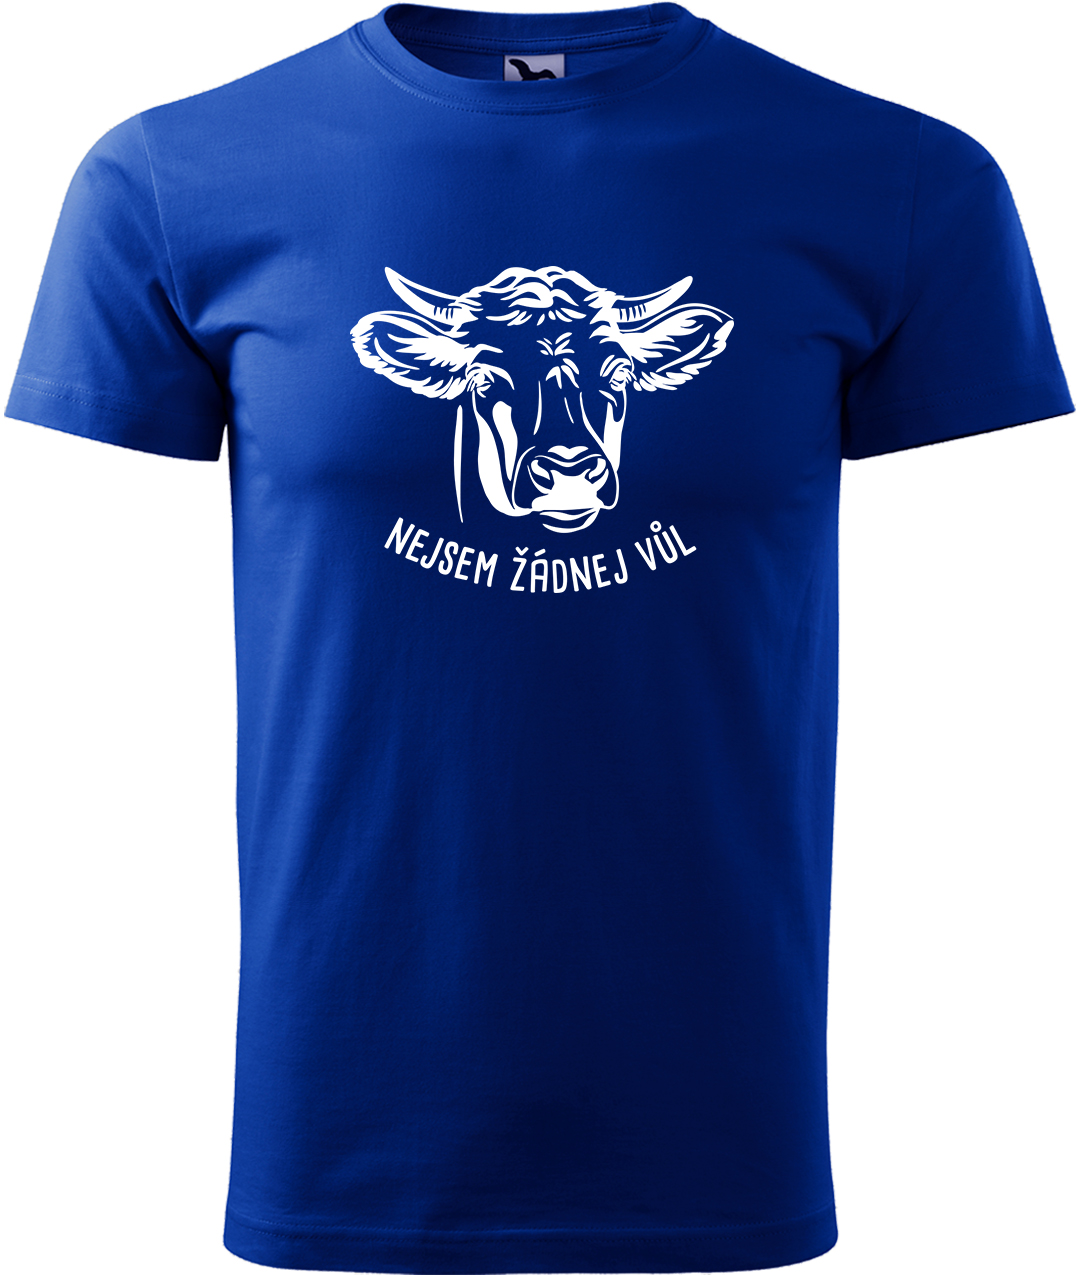 Pánské tričko s krávou - Nejsem žádnej vůl Velikost: M, Barva: Královská modrá (05), Střih: pánský